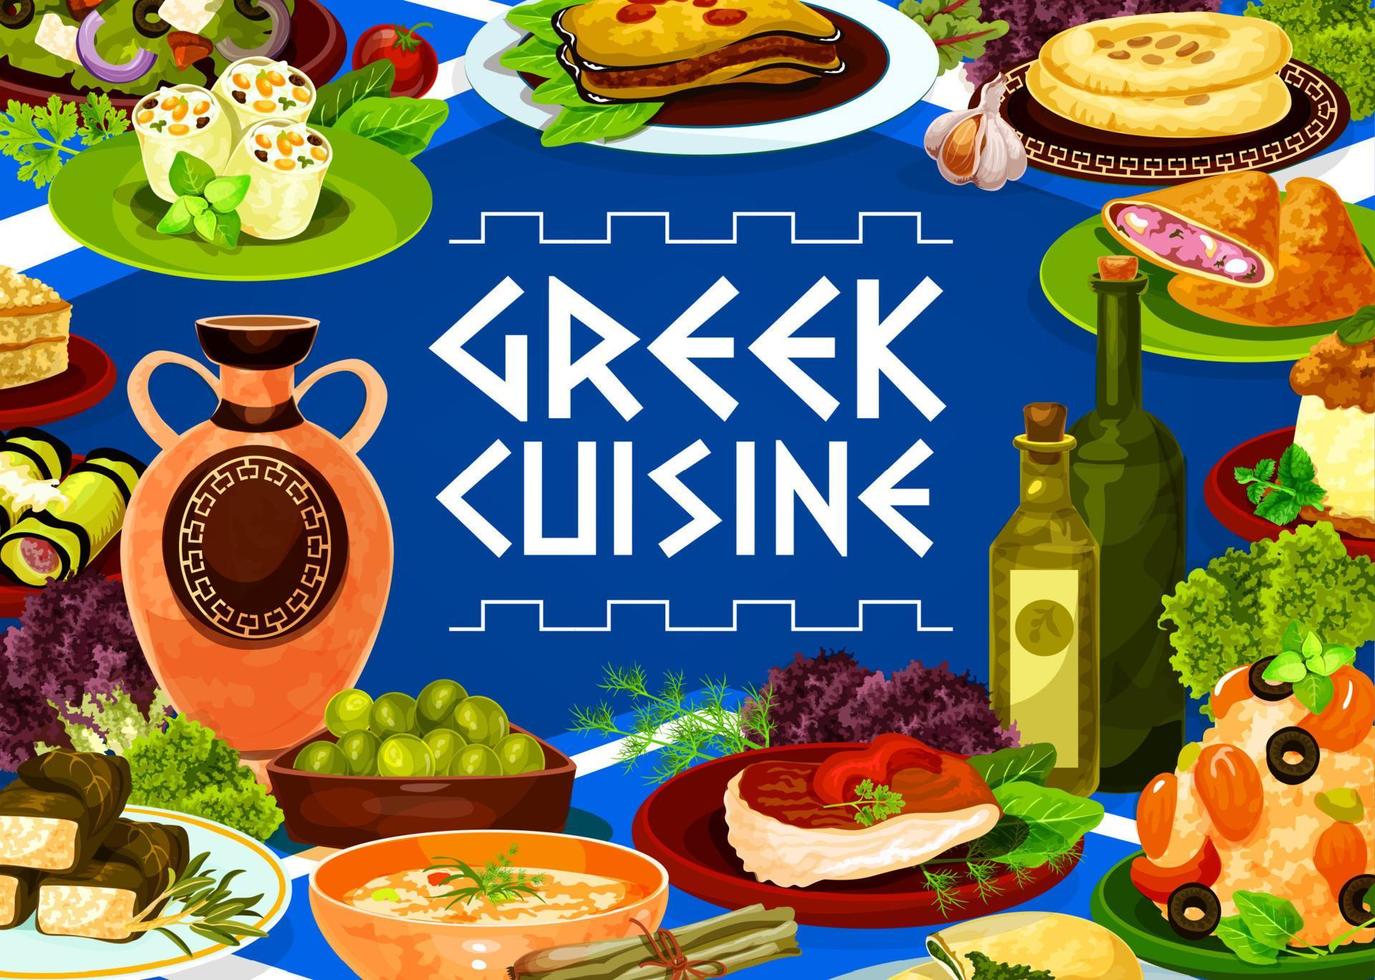 griechischer olivensalat, fleisch, risottogerichte mit meeresfrüchten vektor